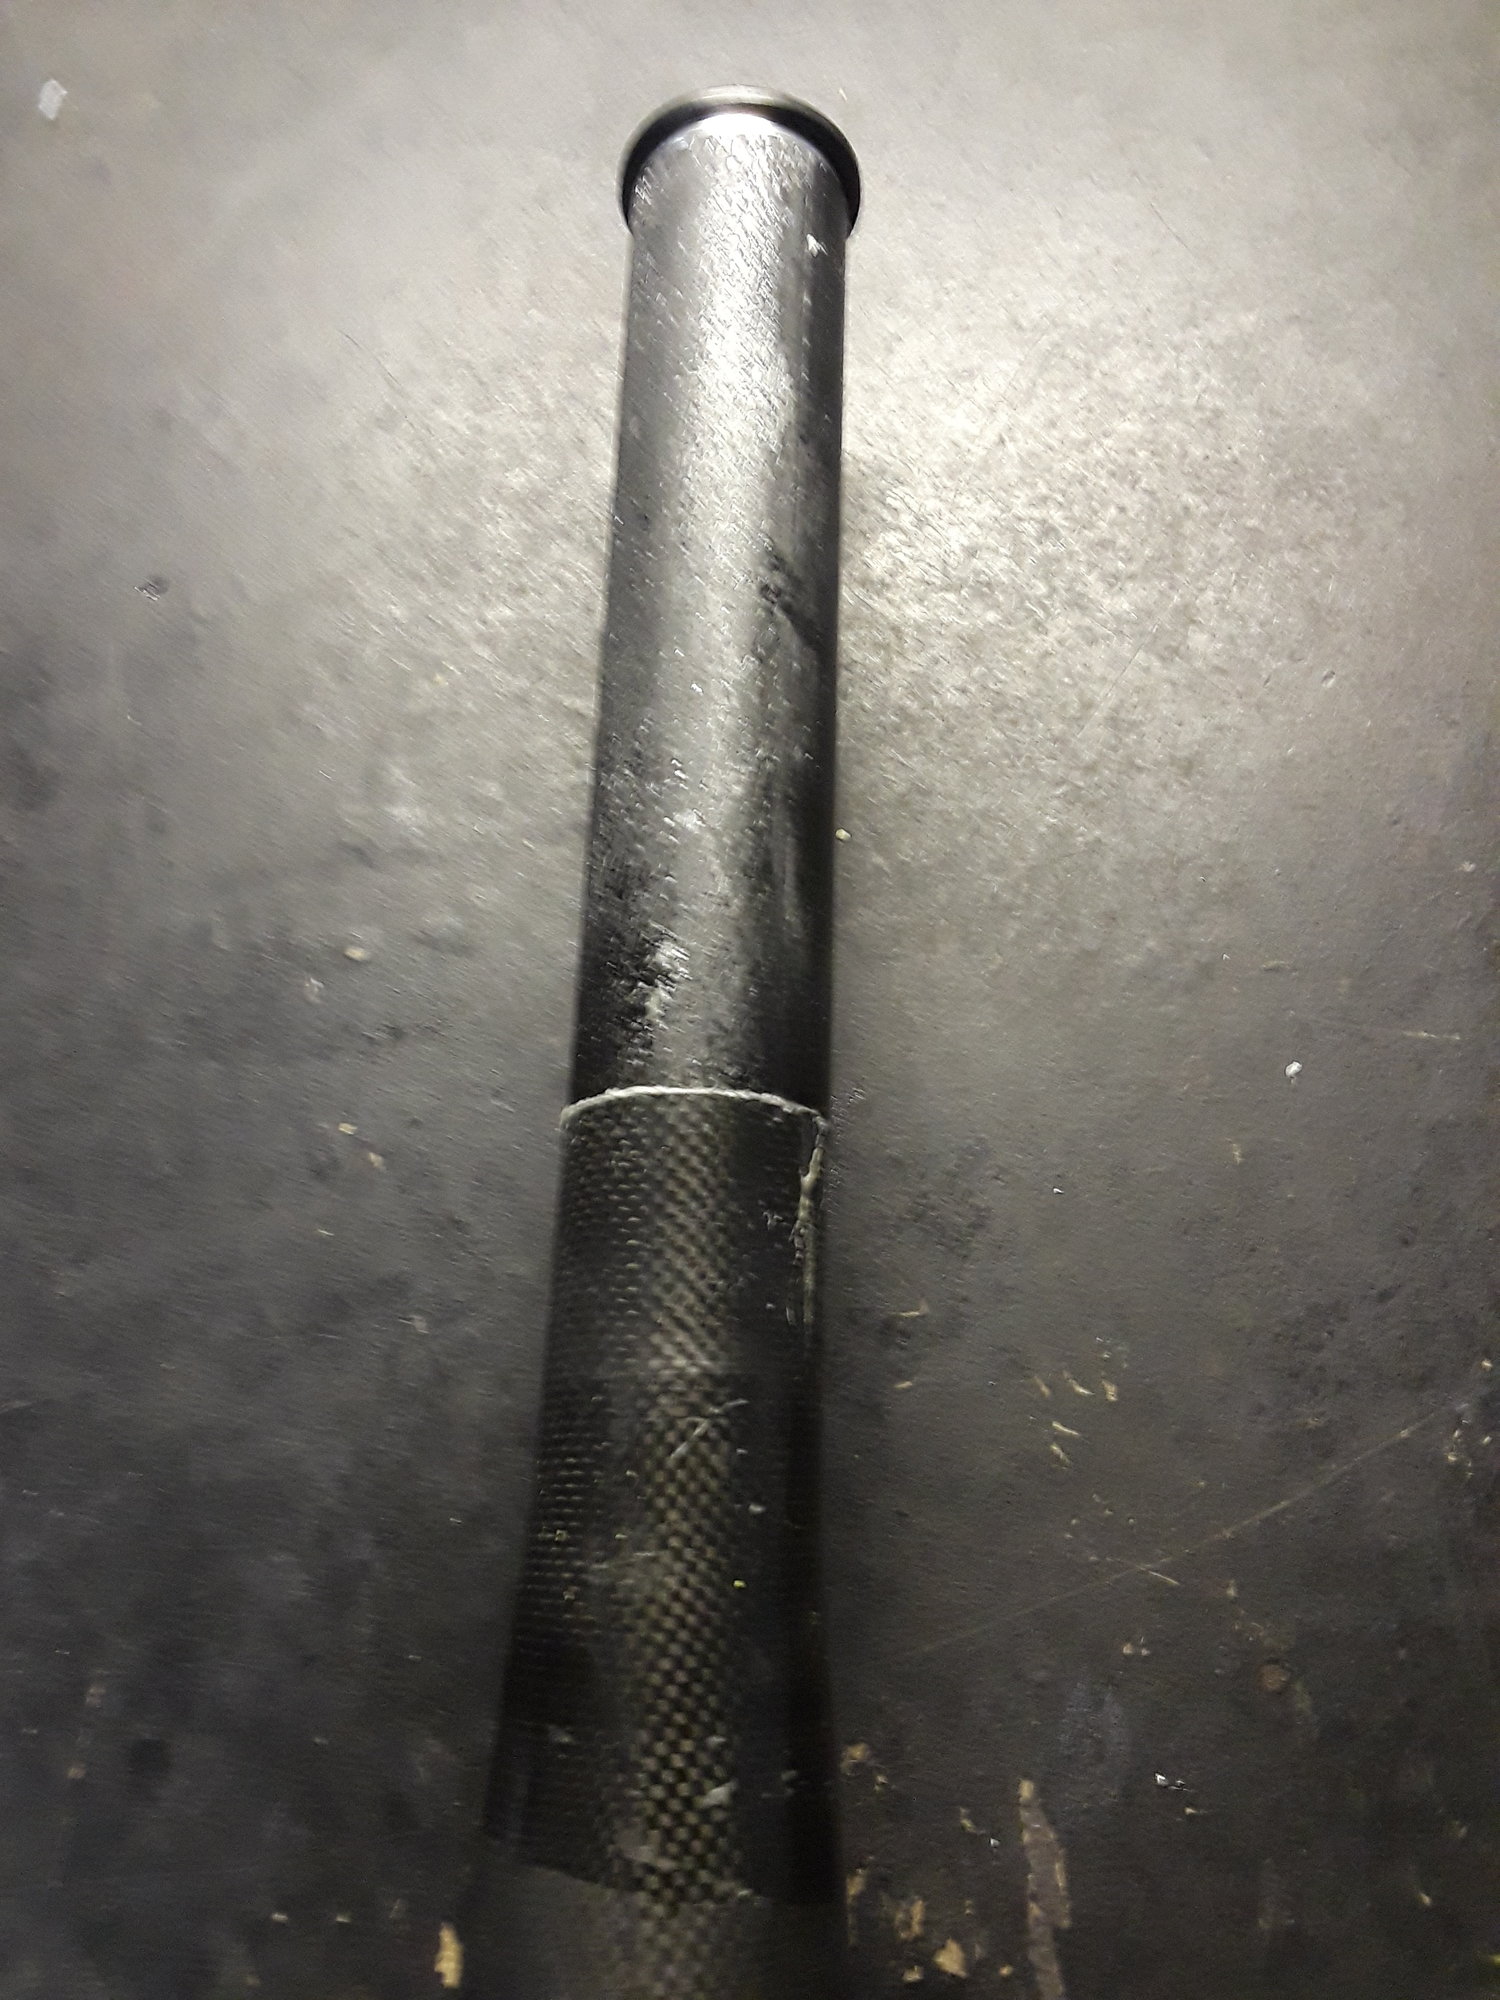 1 inch steerer tube